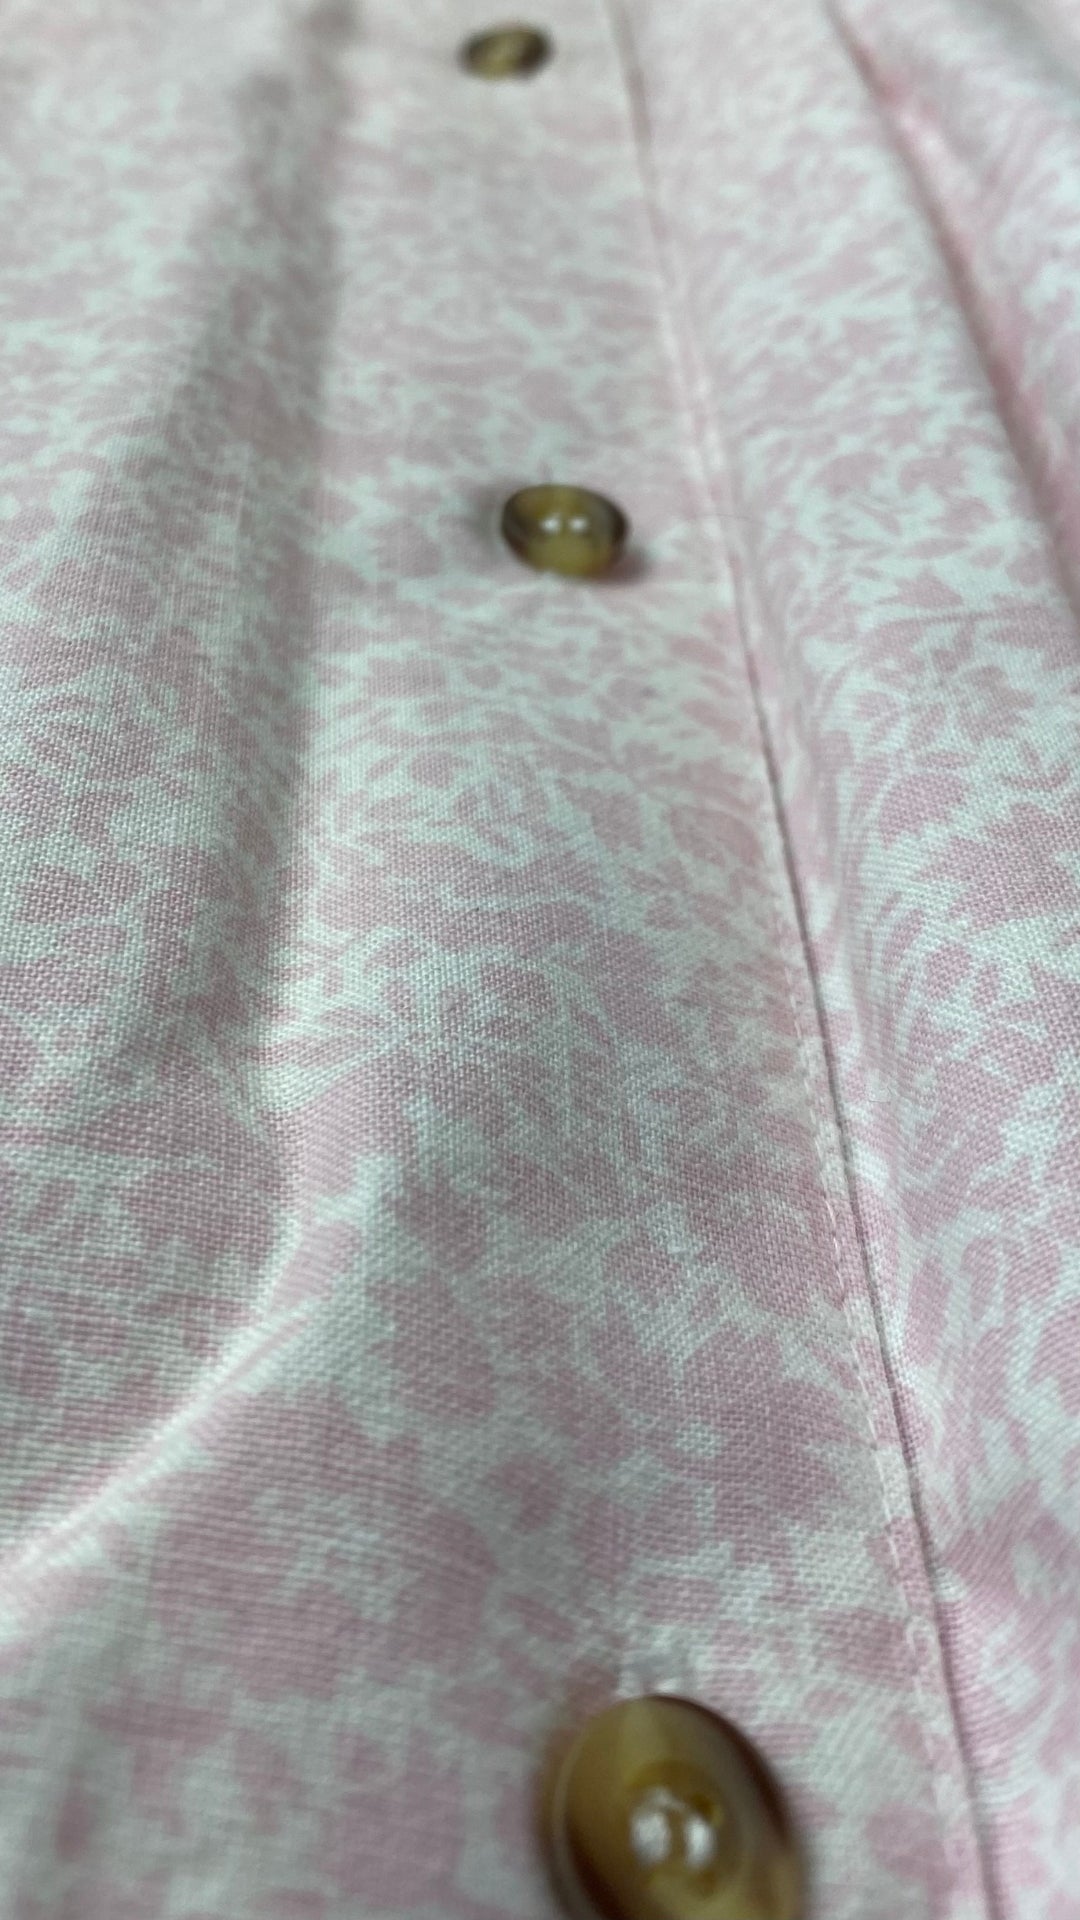 Jupe midi fleurie boutonnée Sperry Top-Sider, taille 8 (xs-s). Vue de près du tissu et des boutons.